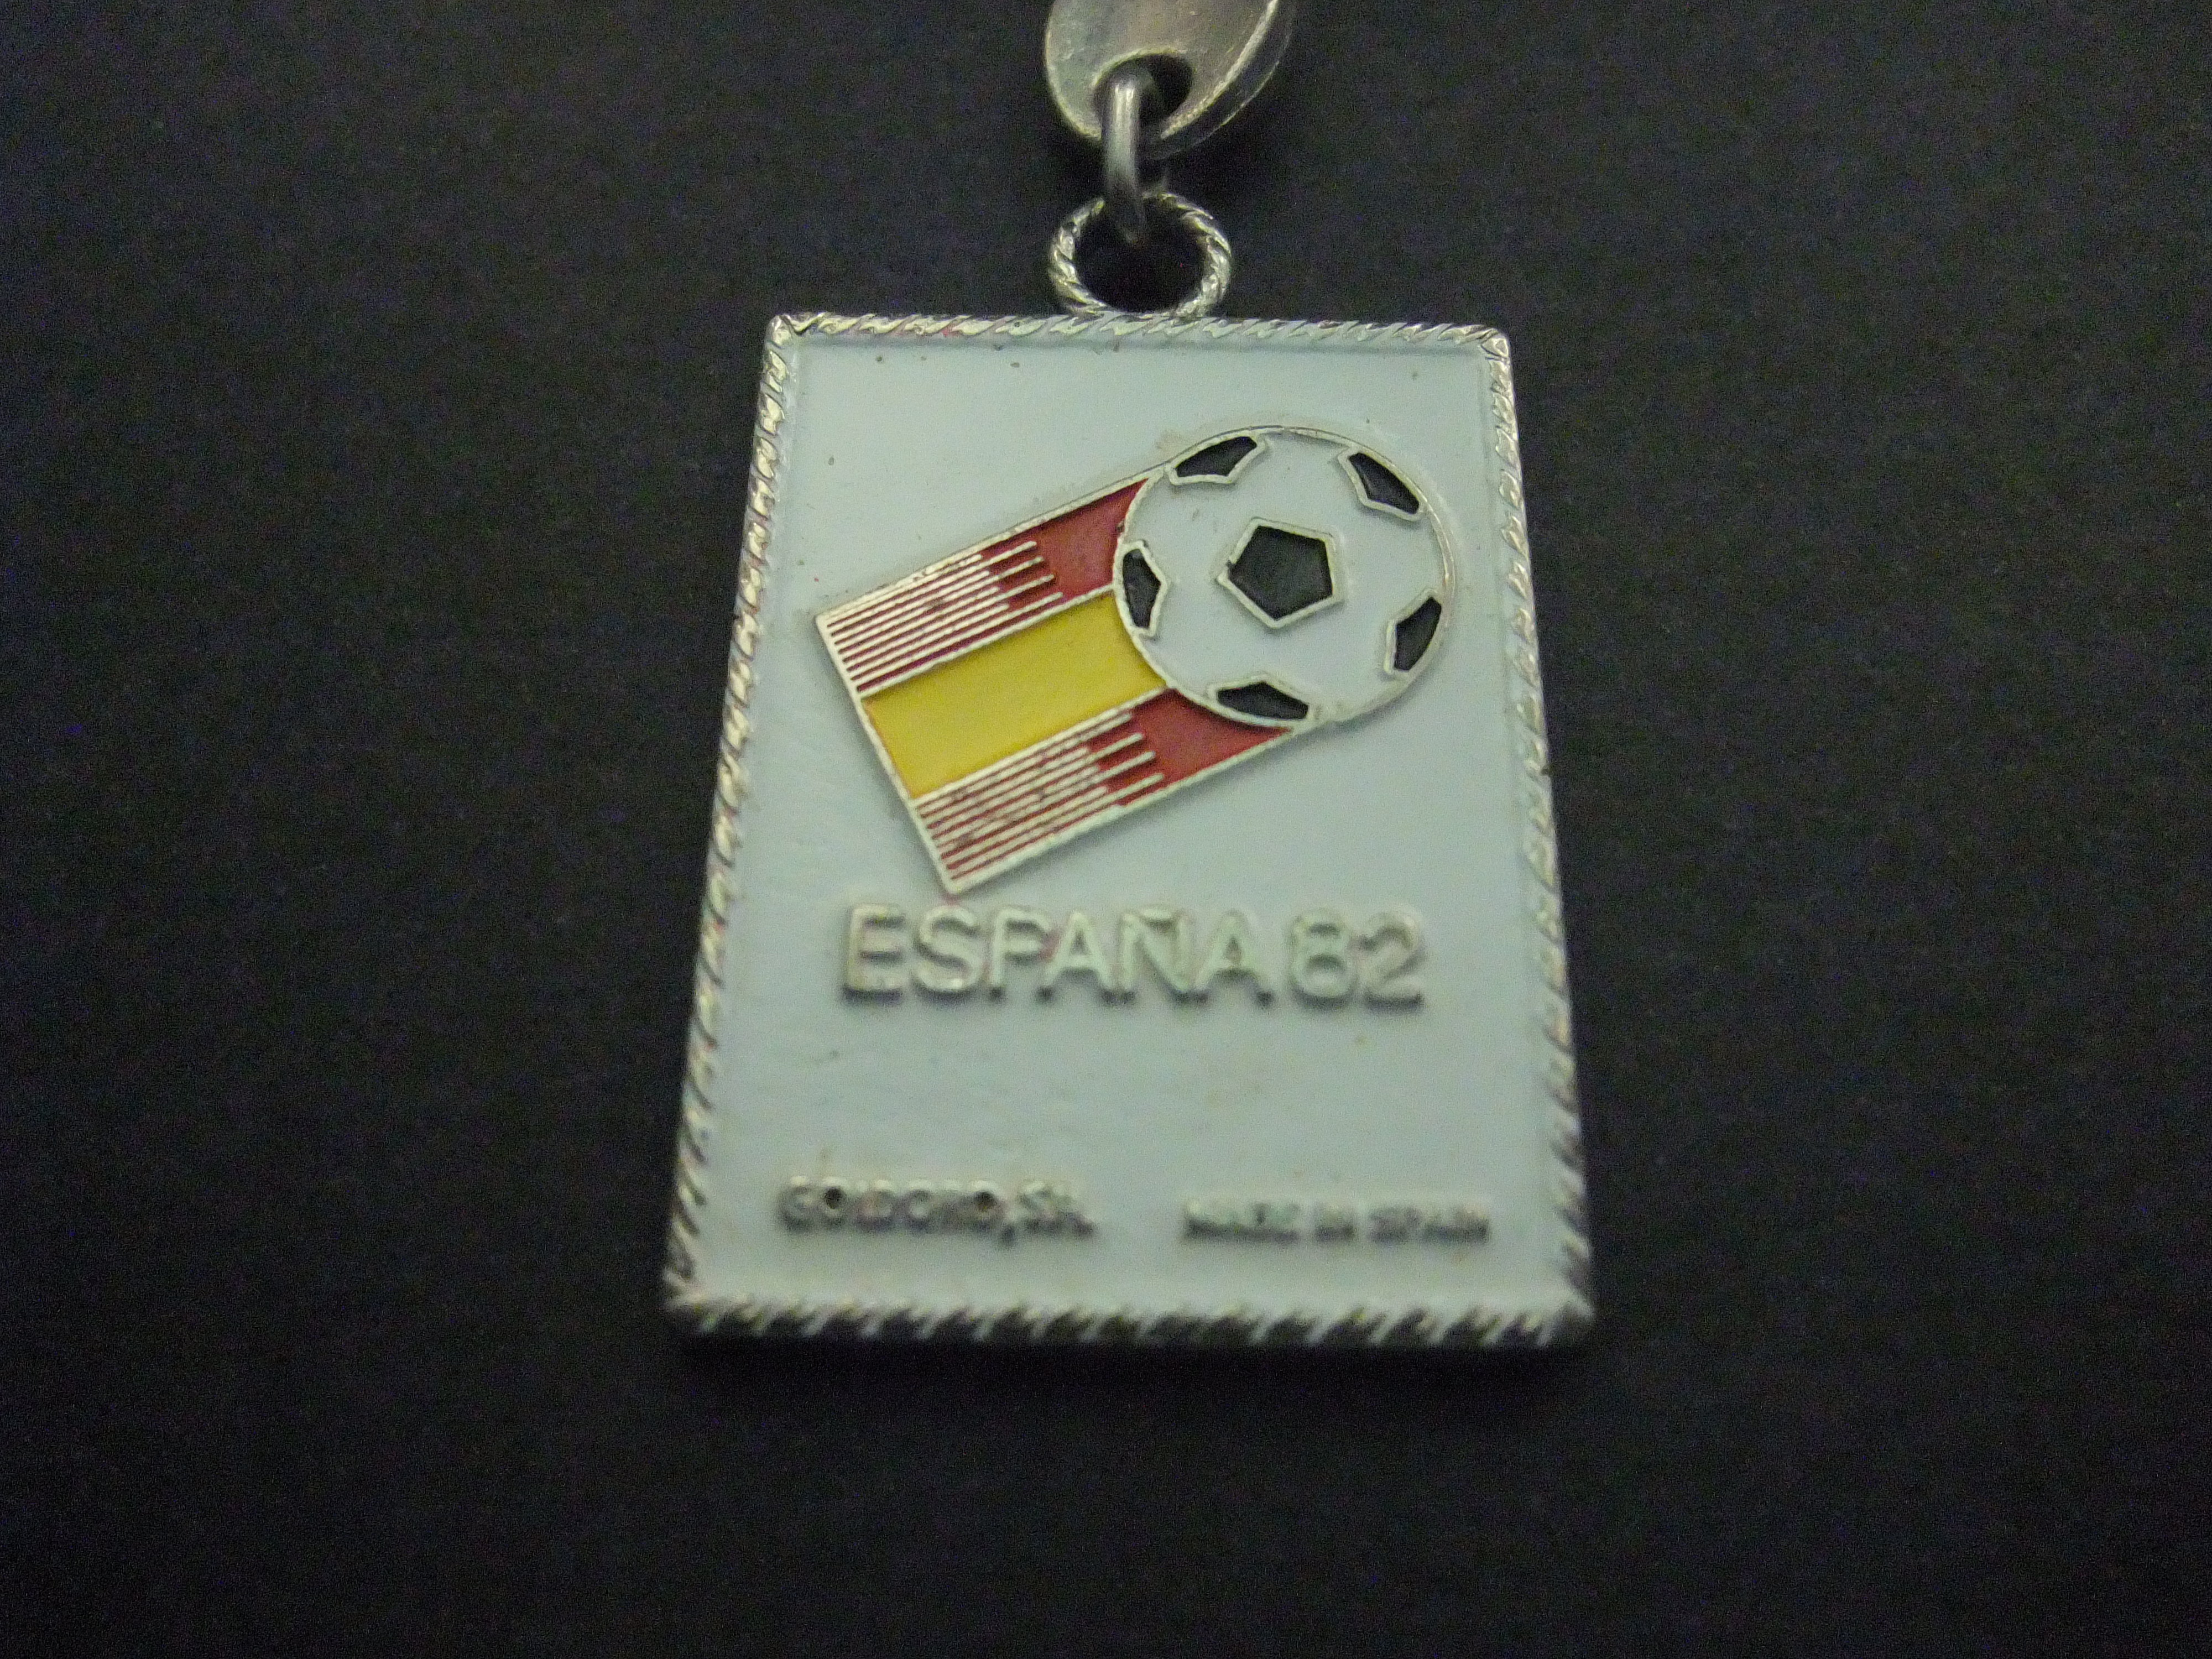 World Cup 1982 Espana wereldkampioenschap voetbal